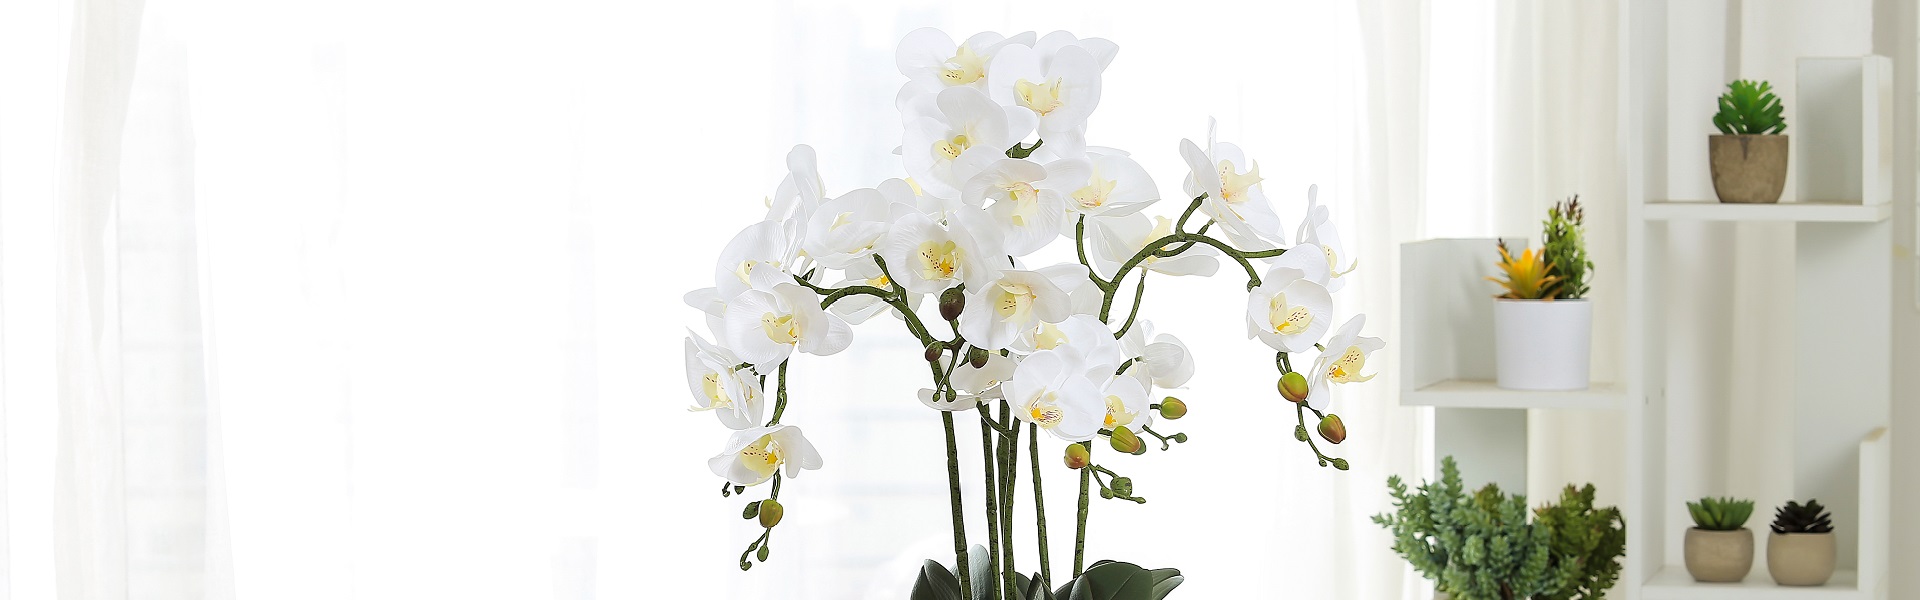 พืชเทียม, succulents ประดิษฐ์, ดอกไม้ประดิษฐ์,Huizhou Baifeng Arts&Crafts Co.,Ltd.